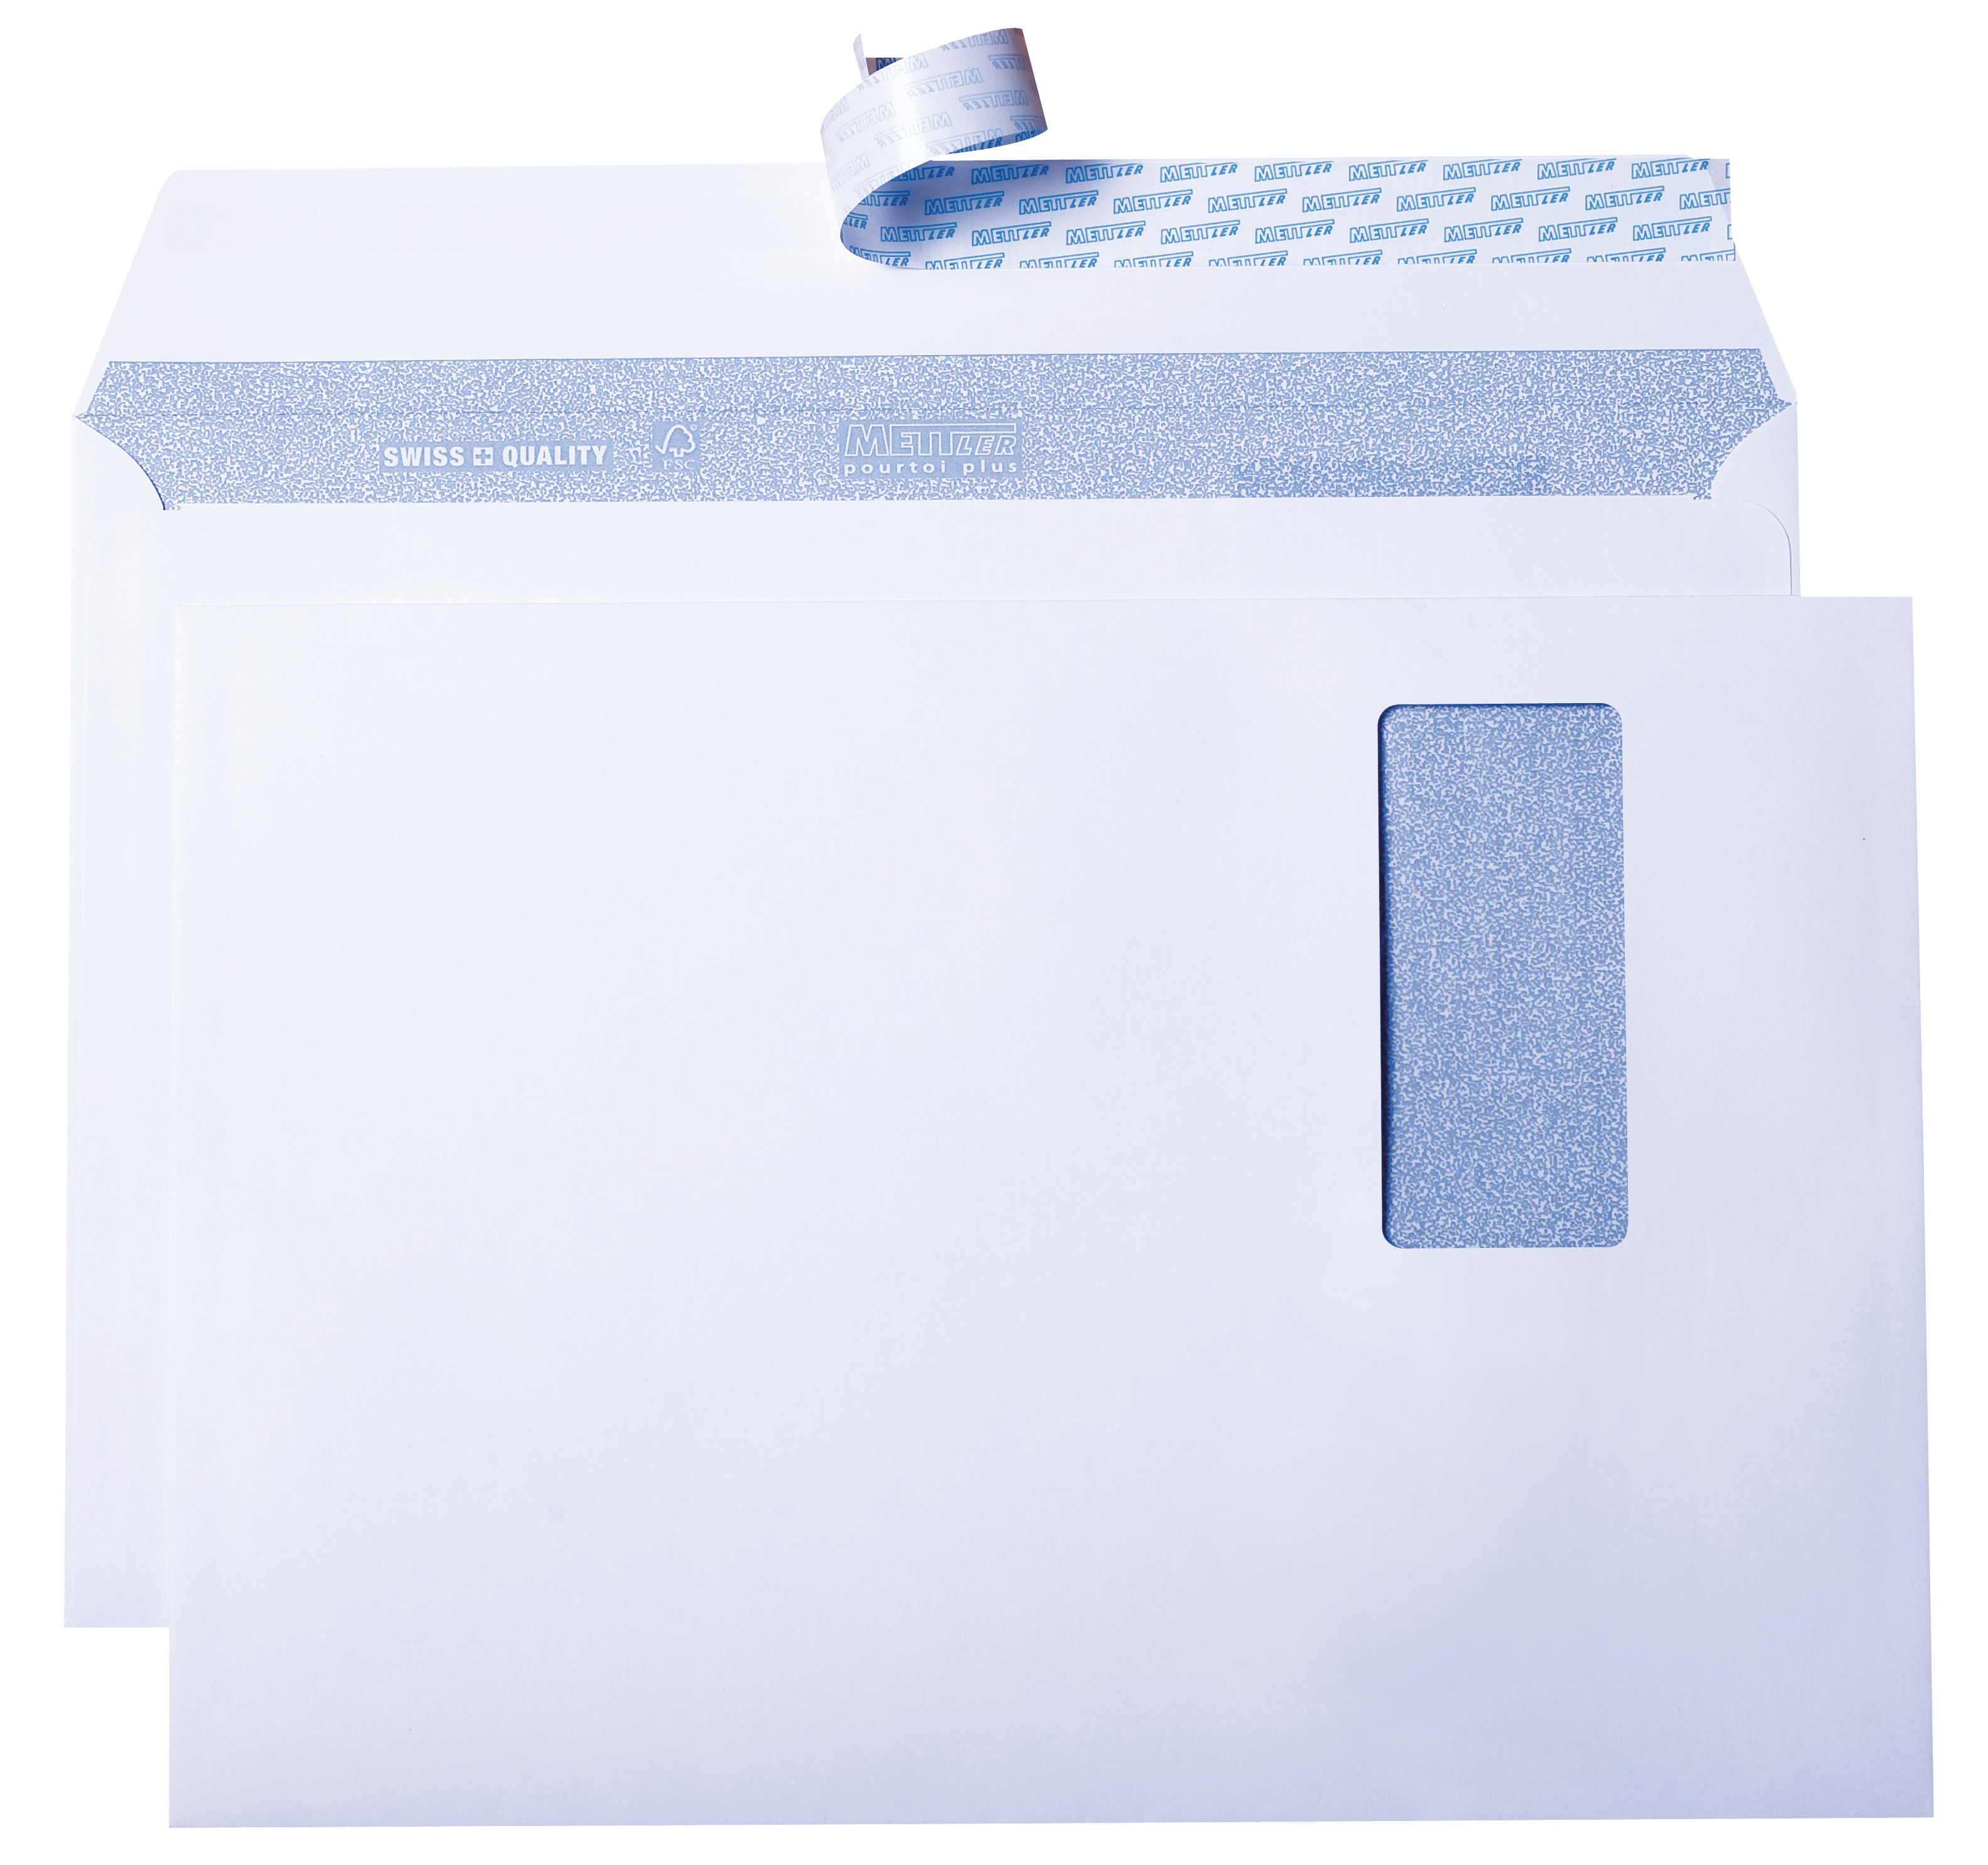 METTLER Envelope fenêtre gauche C4 9065-120-S20 120g,blanc,colle 20 pcs.